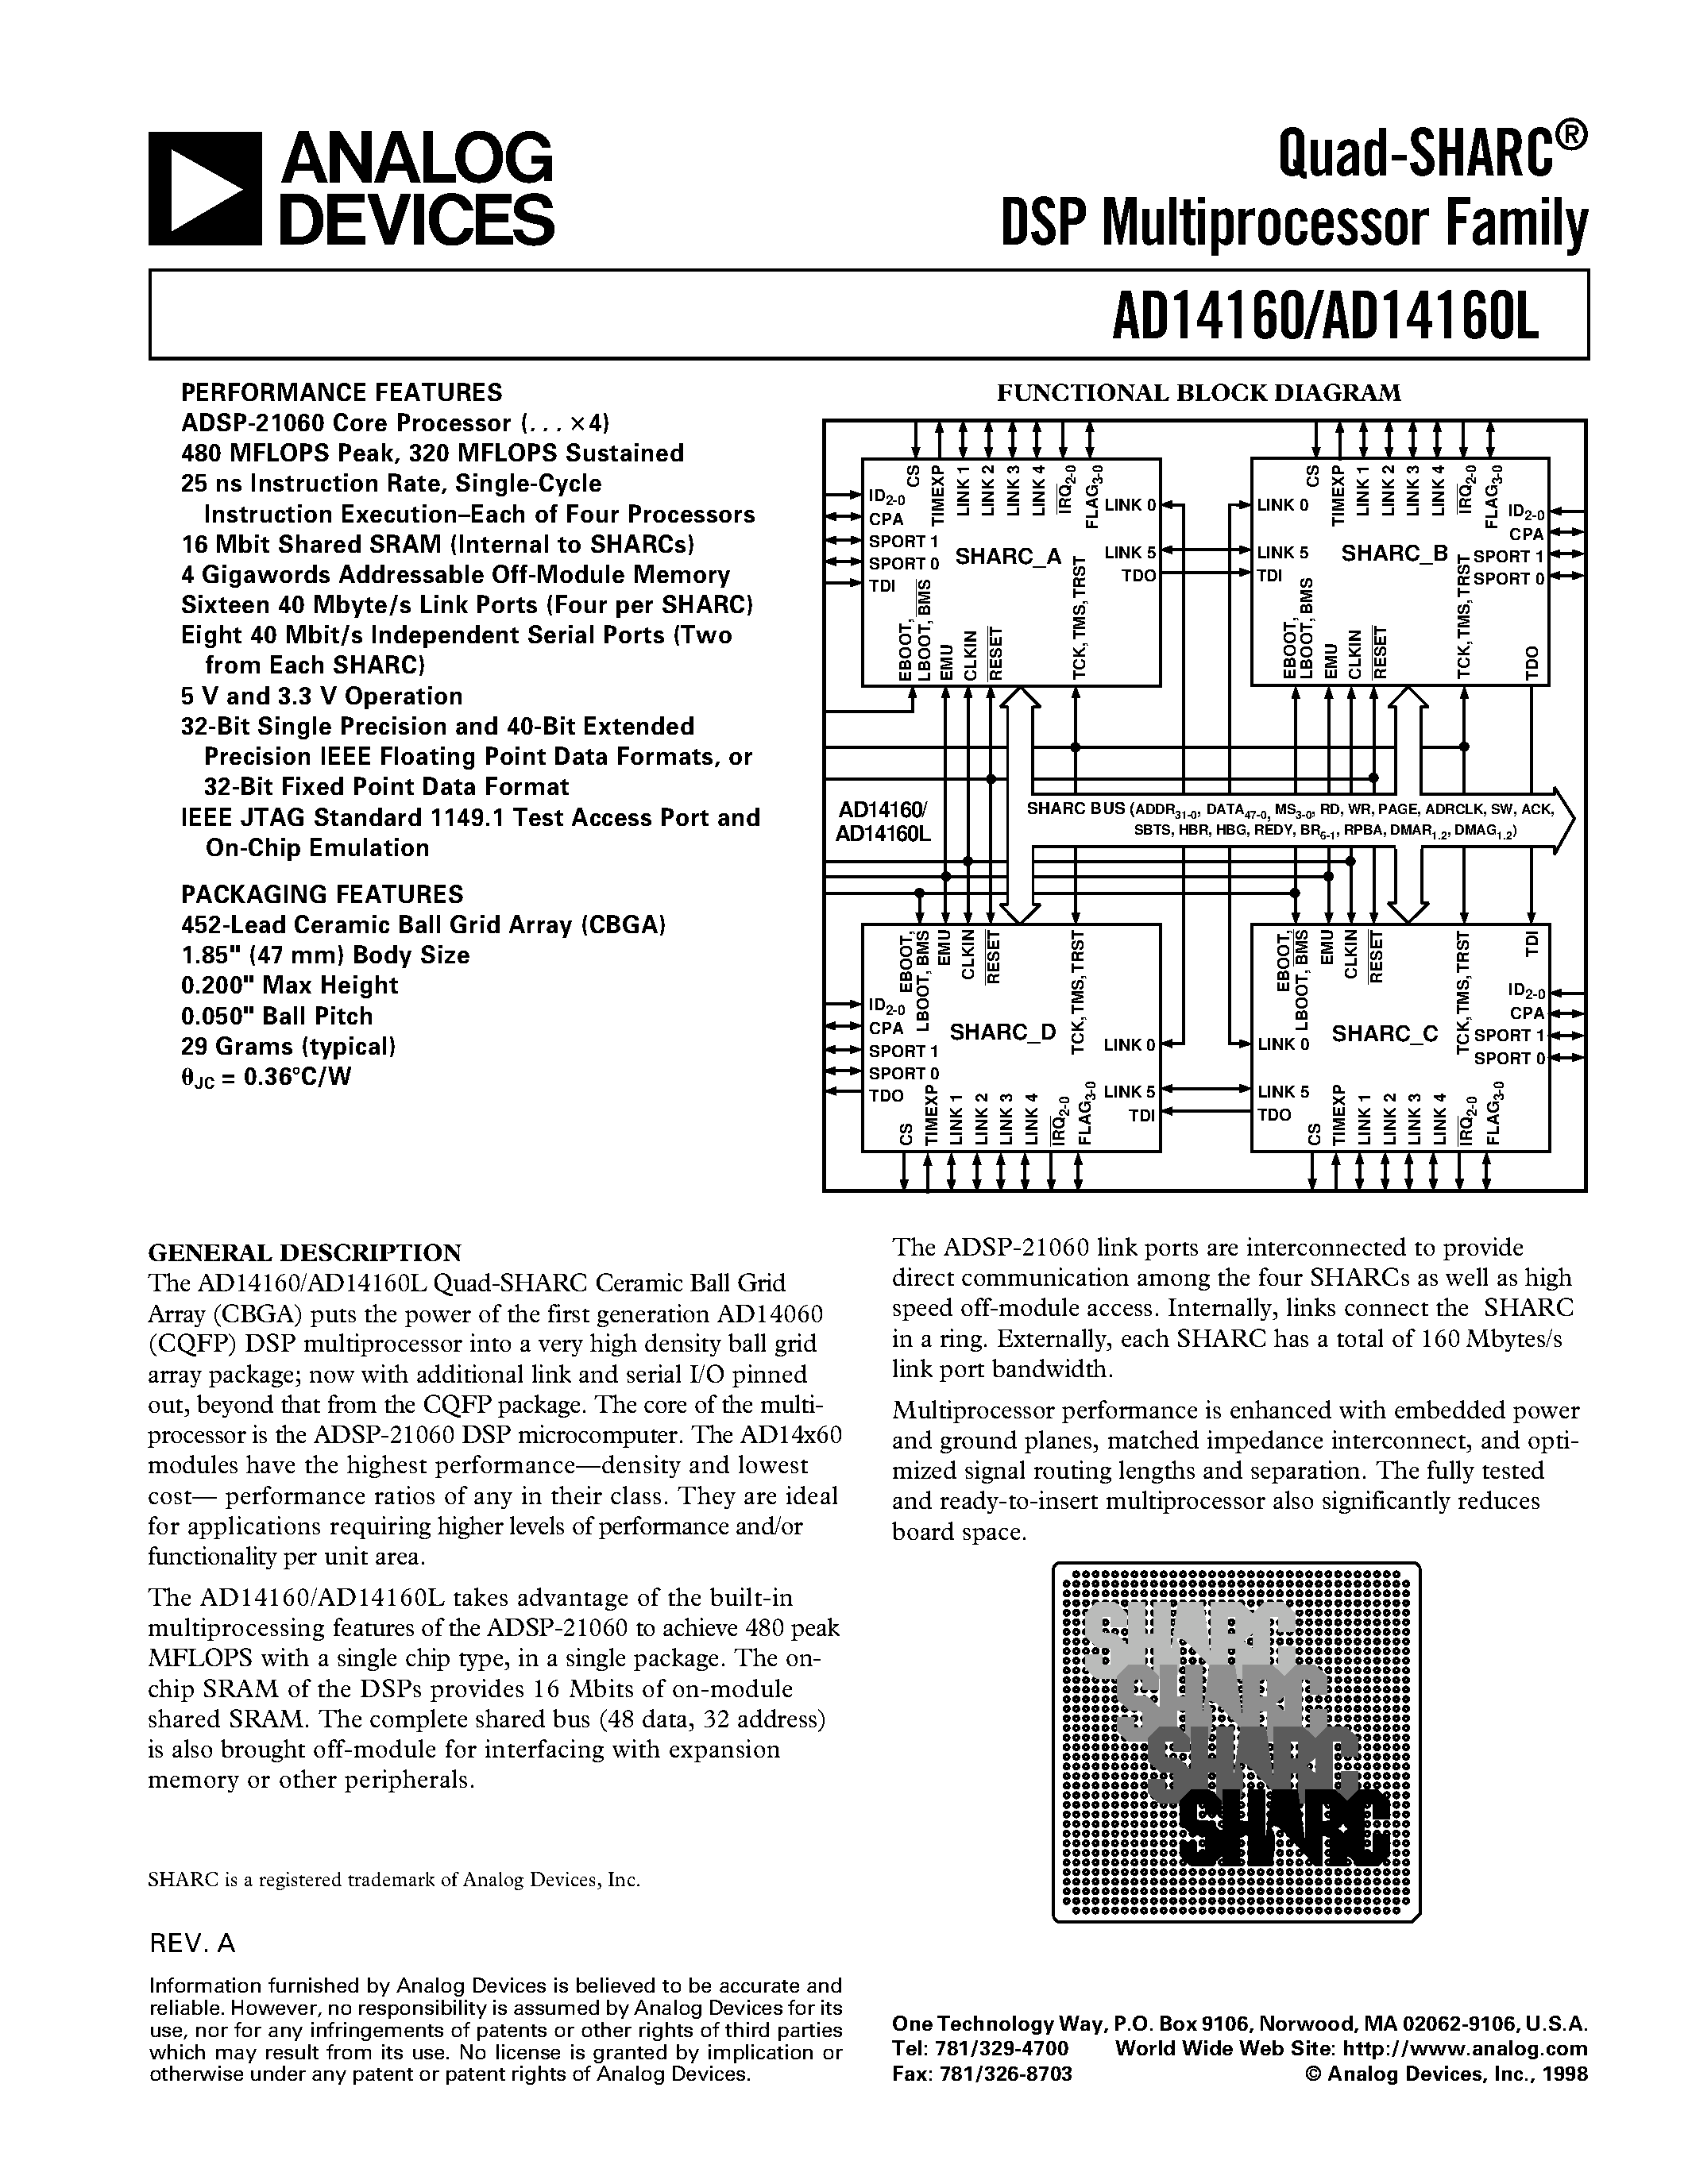 Даташит AD14160 - Quad-SHARC DSP Multiprocessor Family страница 1